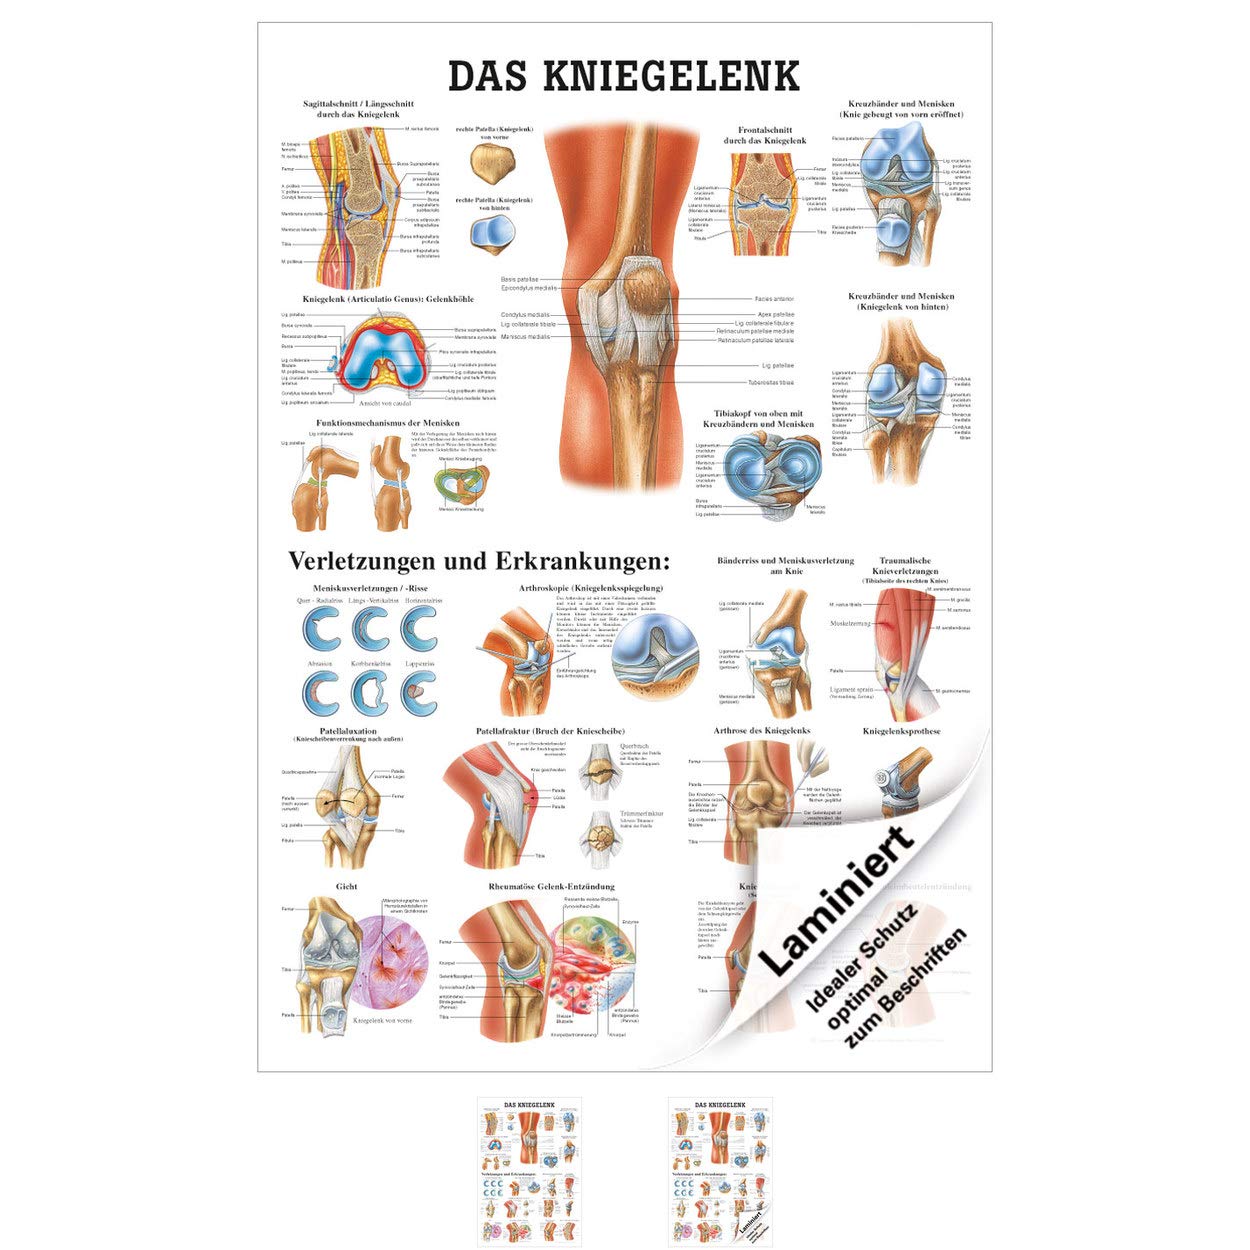 Rüdiger Das Kniegelenk Lehrtafel Anatomie 100x70 cm medizinische Lehrmittel